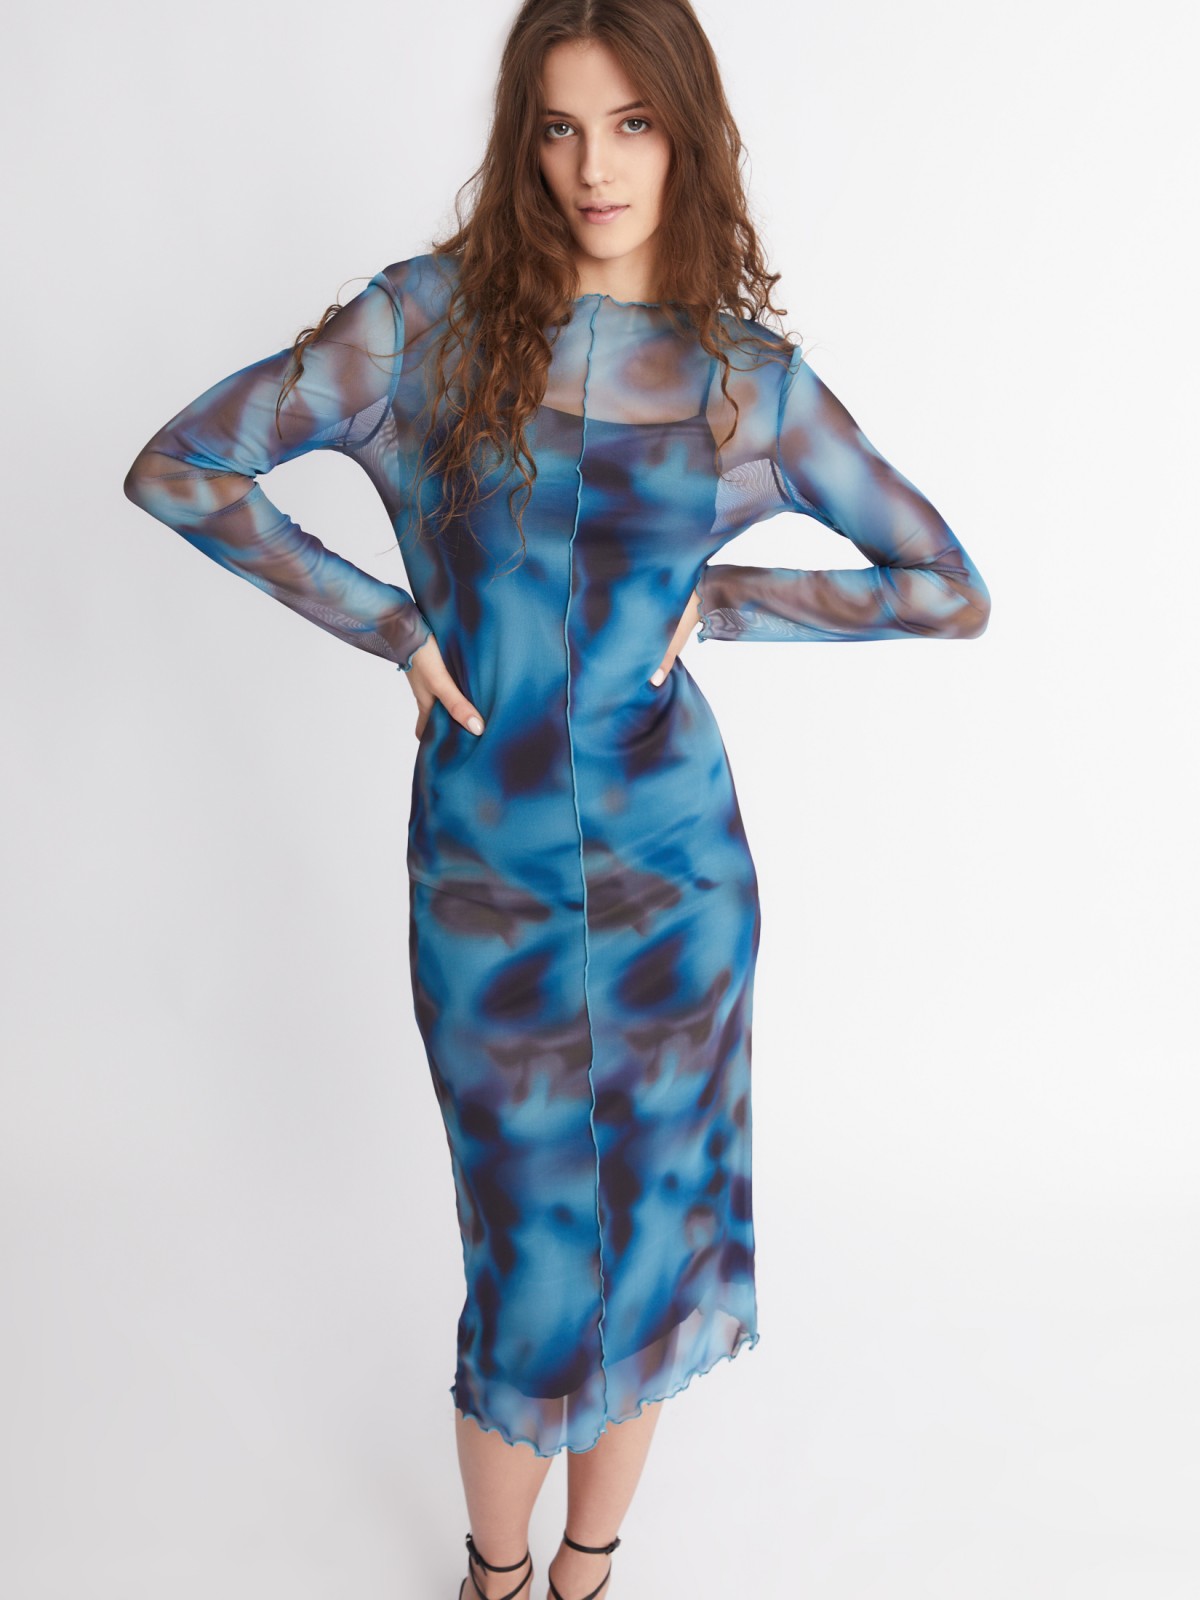 Платье из сетчатой ткани длины миди с акцентным принтом и фактурными строчками zolla 223338155111, цвет голубой, размер S - фото 1